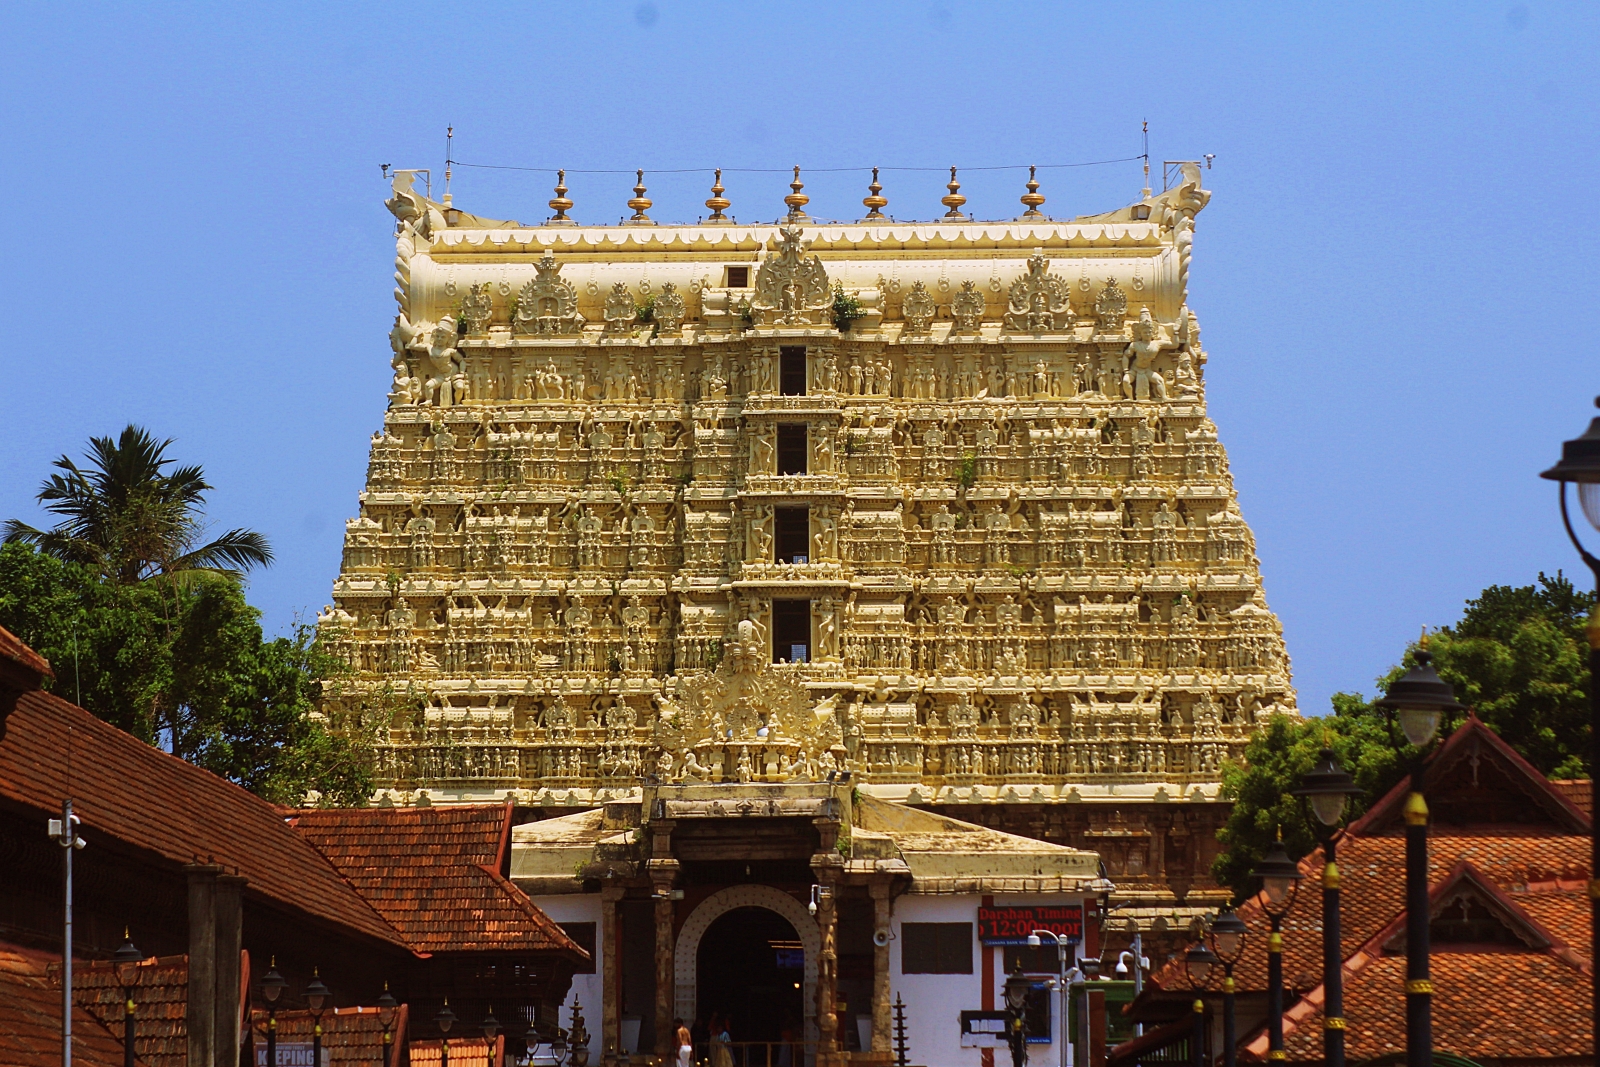 Sree Padmanabhaswamy Temple and Kuthiramalika Palace